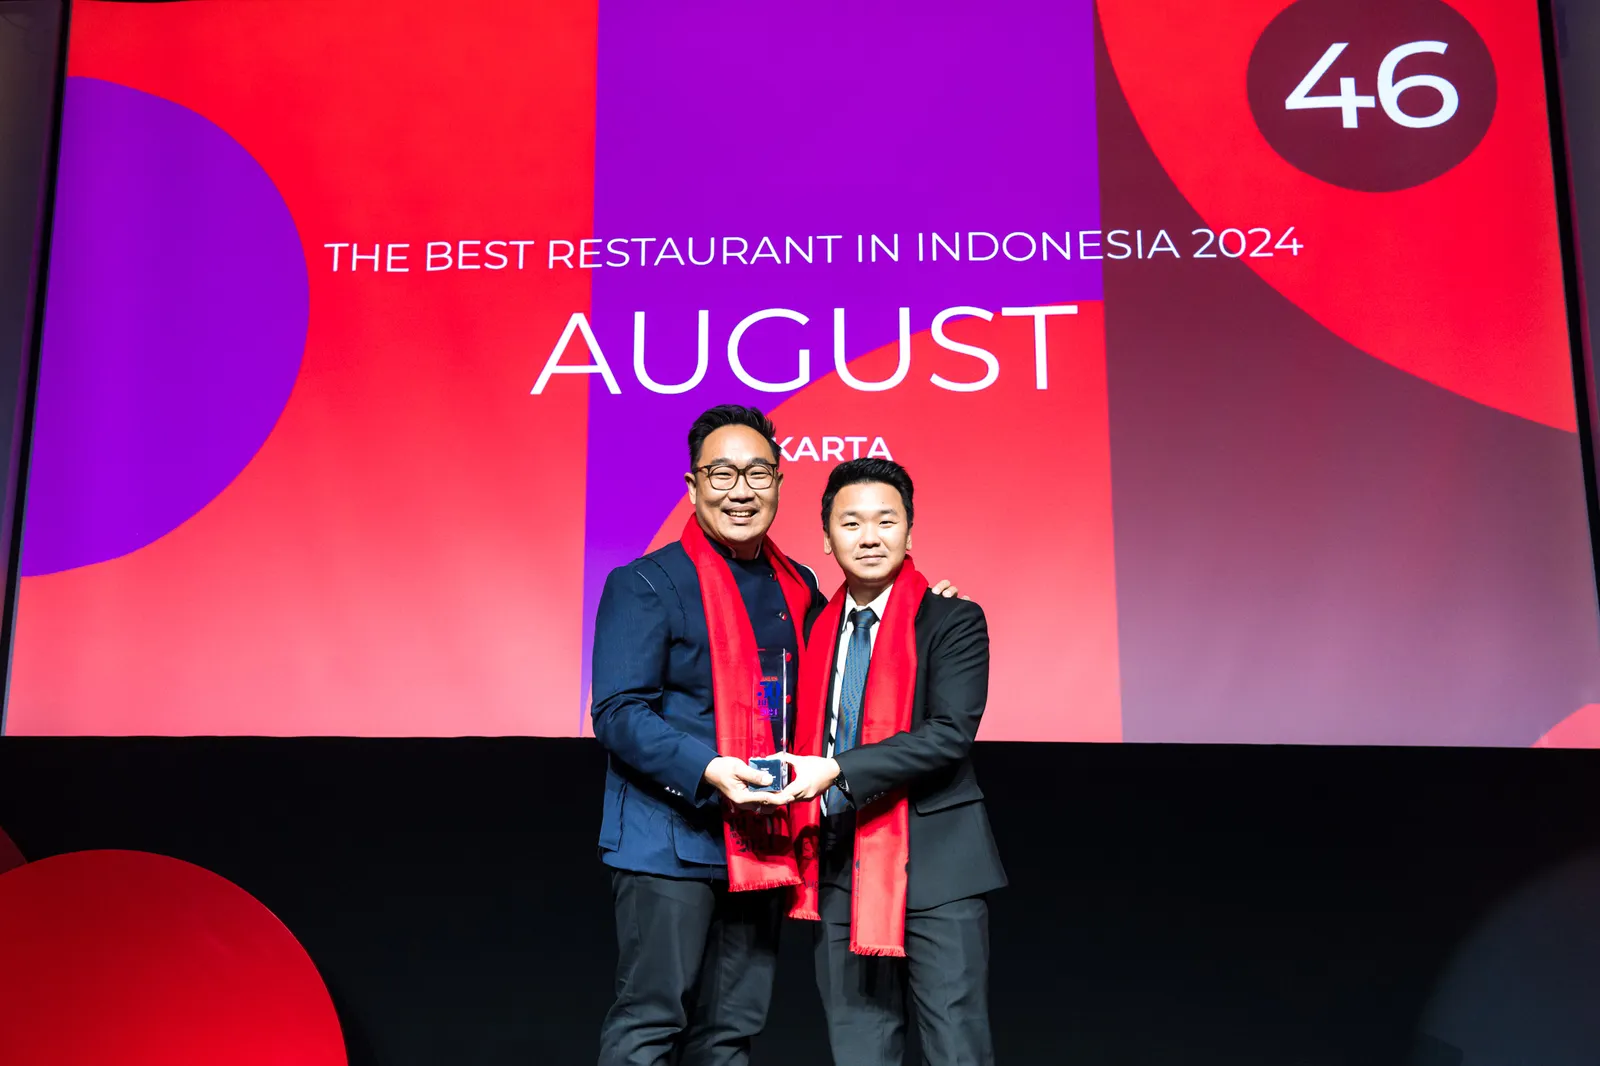 August Berhasil Masuk Daftar

Asia’s 50 Best Restaurants 2024, Bangga!